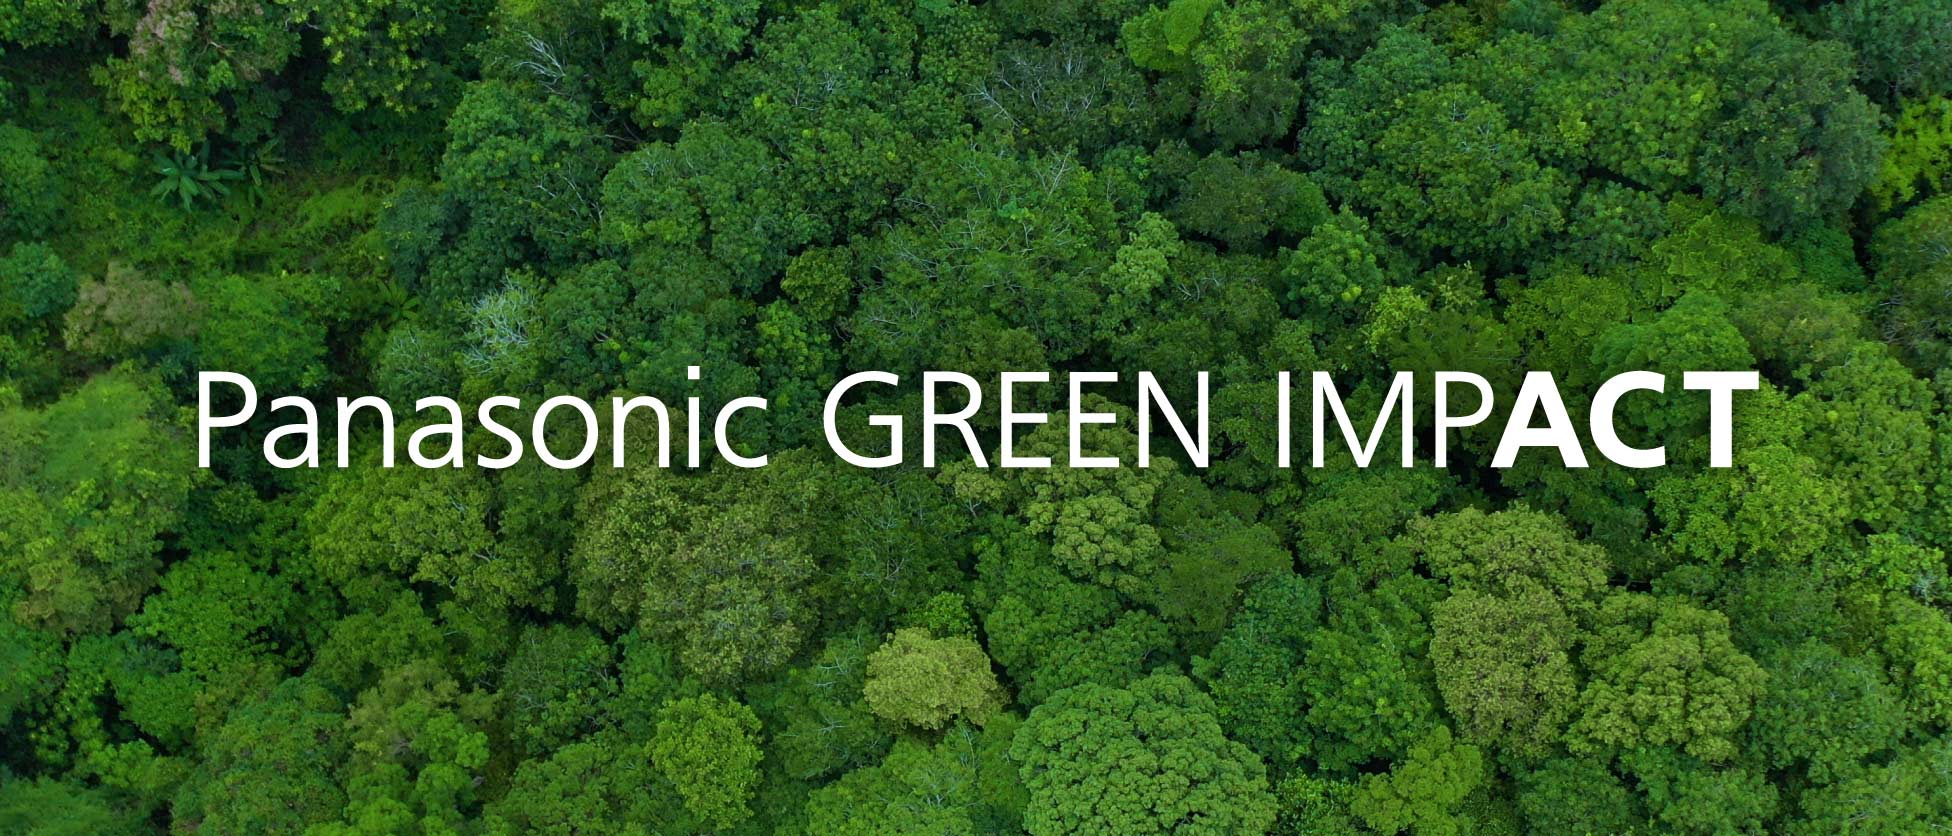 Panasonic GREEN IMPACT